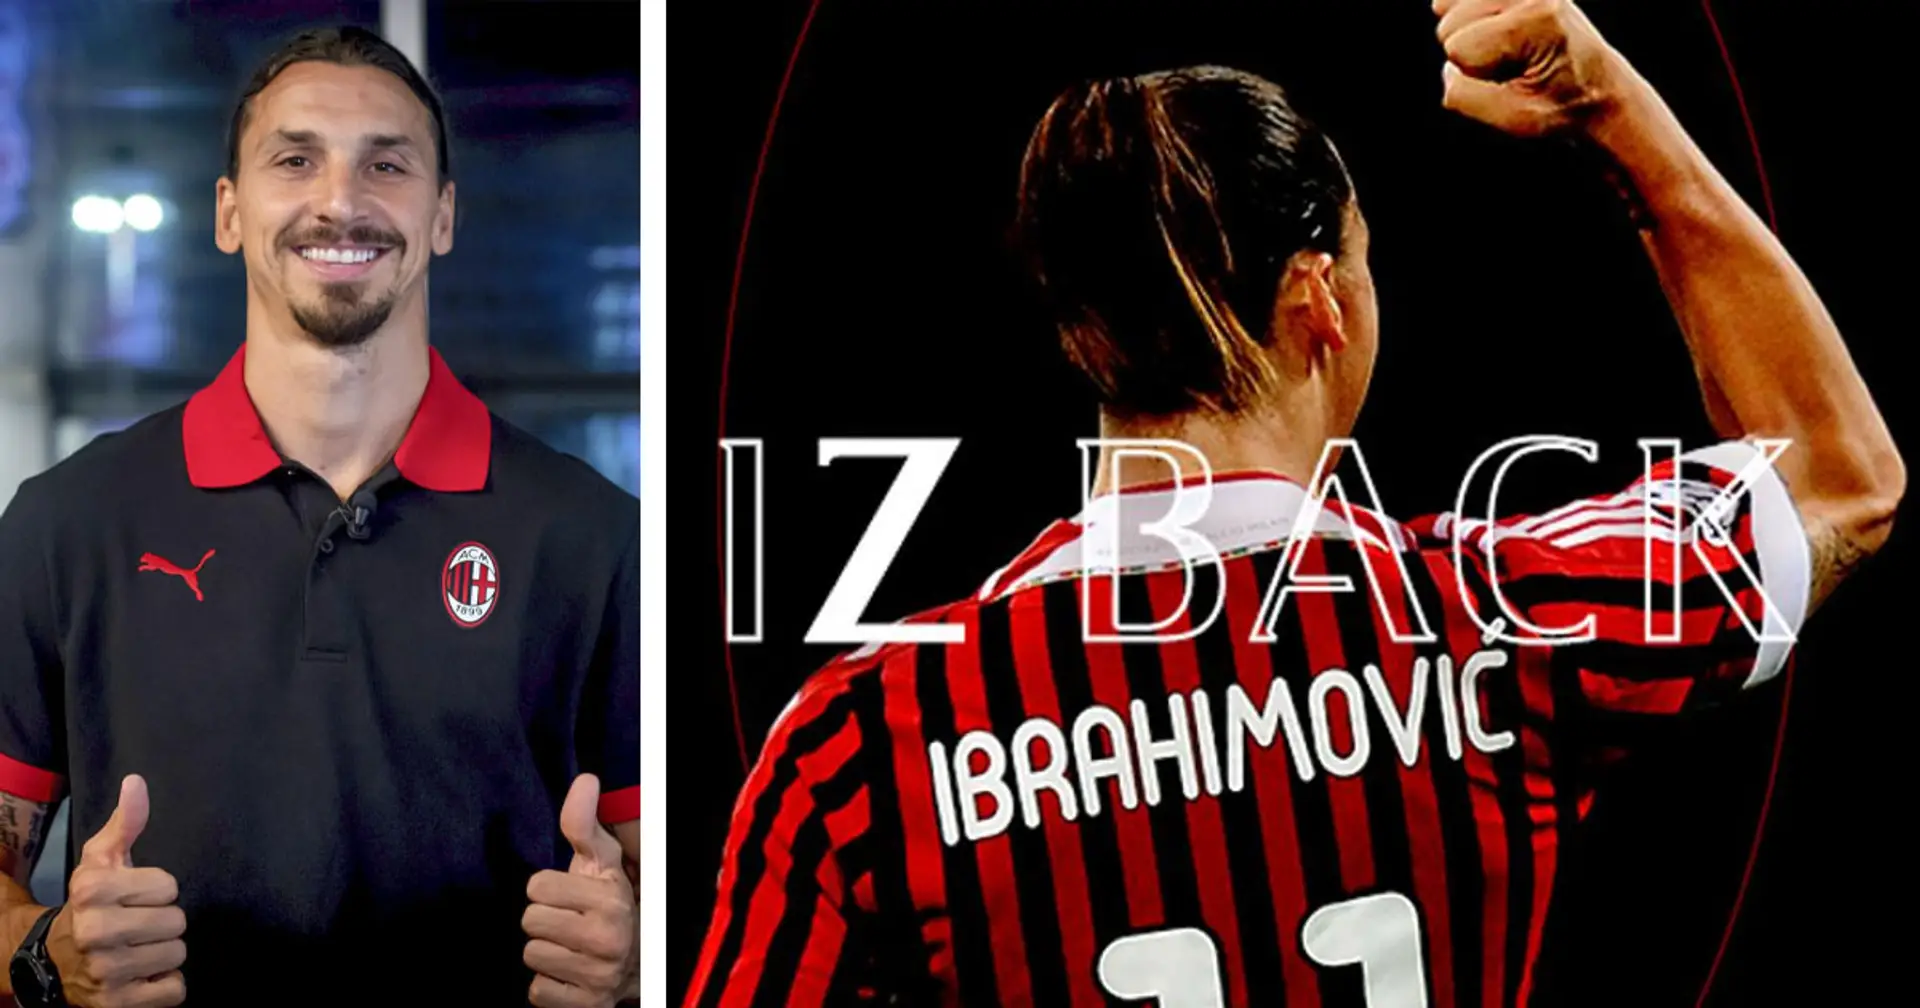 "Con il Napoli era fatta", Ibrahimovic spiega il motivo per cui ha deciso di tornare al Milan dicendo no agli azzurri